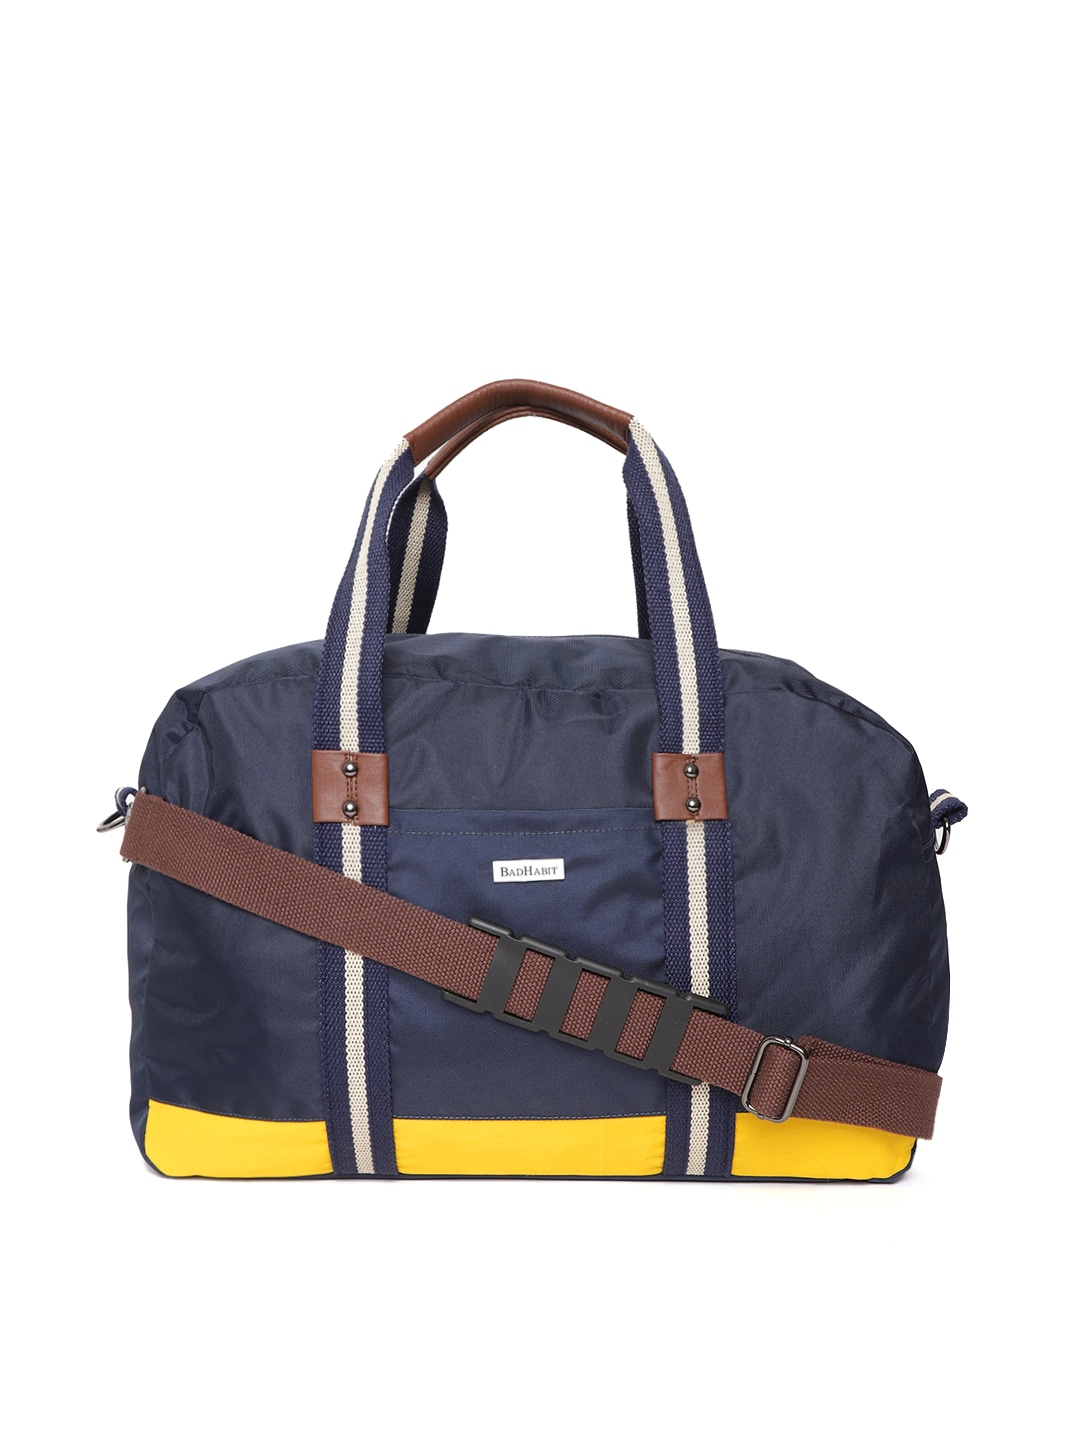 Accessories Duffel Bag | BAD HABIT Unisex Navy Blue Gym Duffel Bag - GR05921